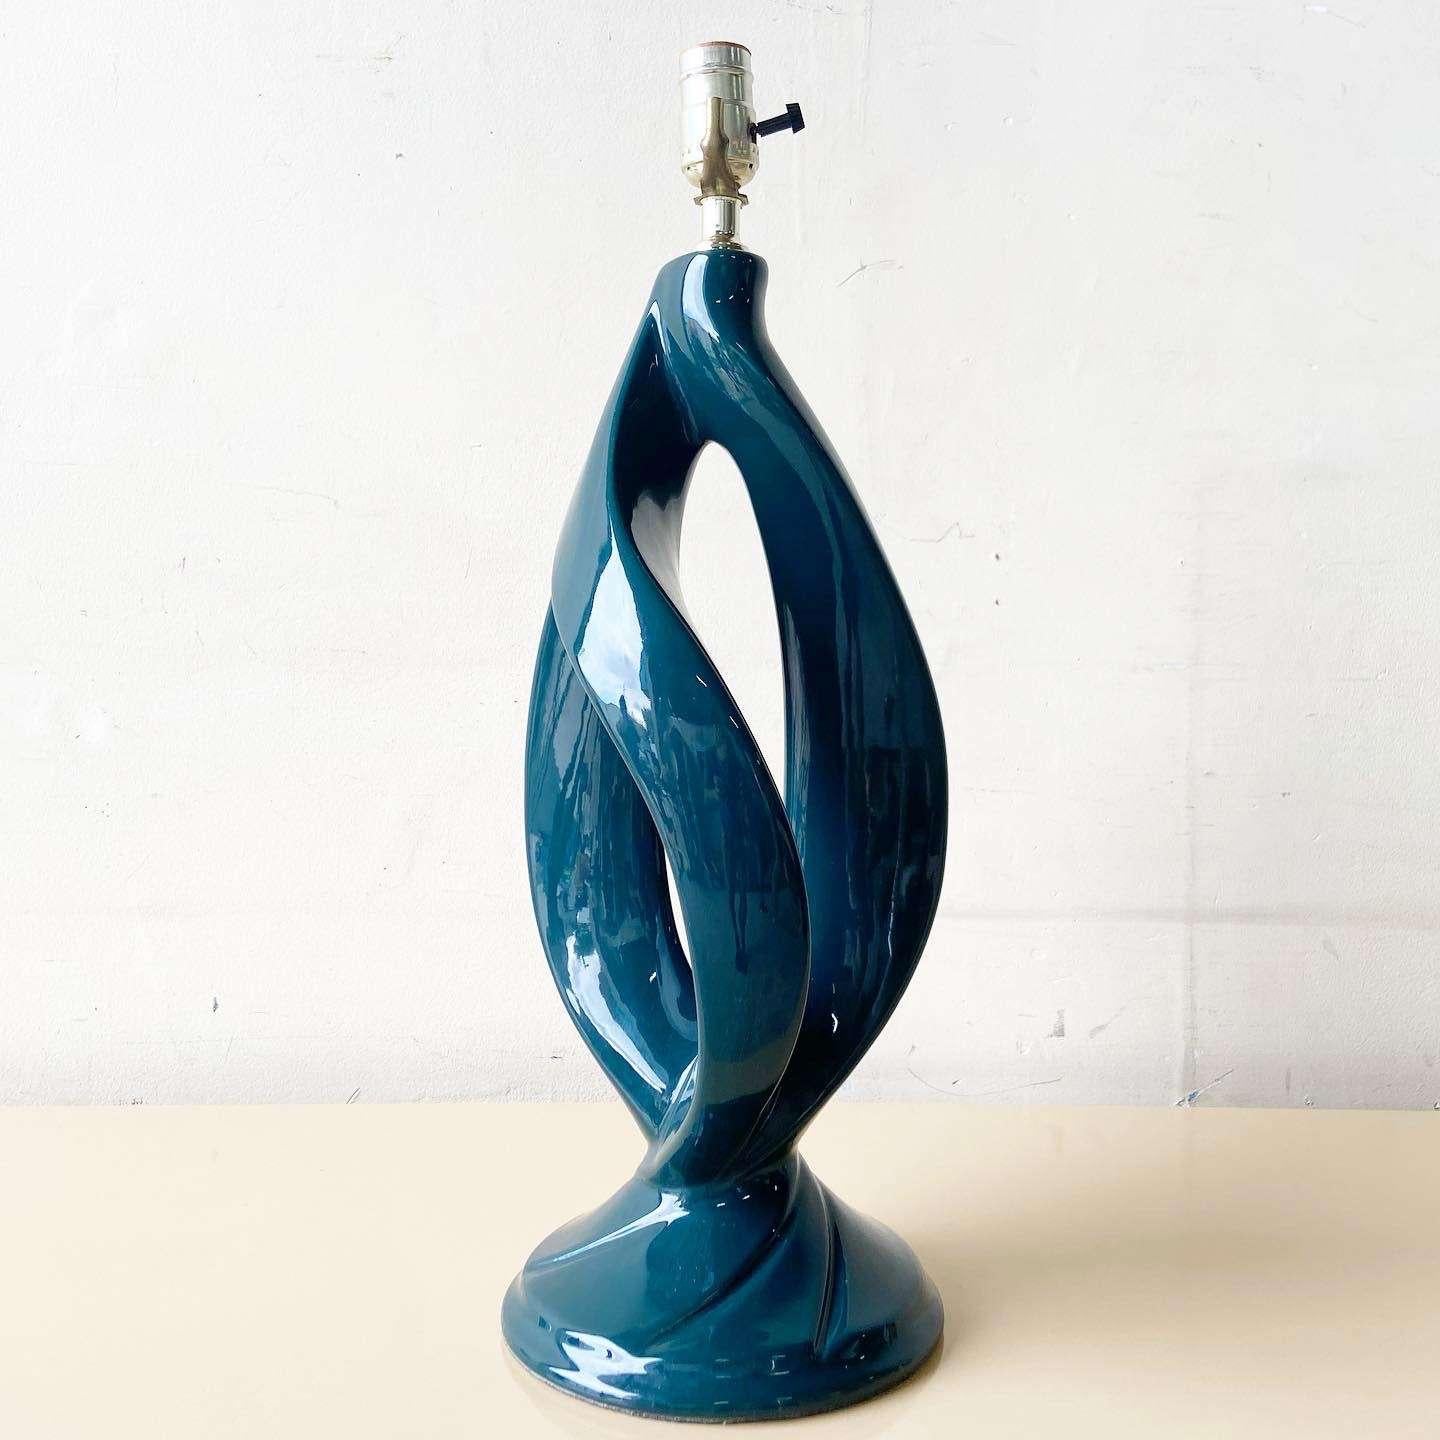 Exceptionnelle lampe de table postmoderne en céramique sculptée. Ressemble au buisson ardent.
